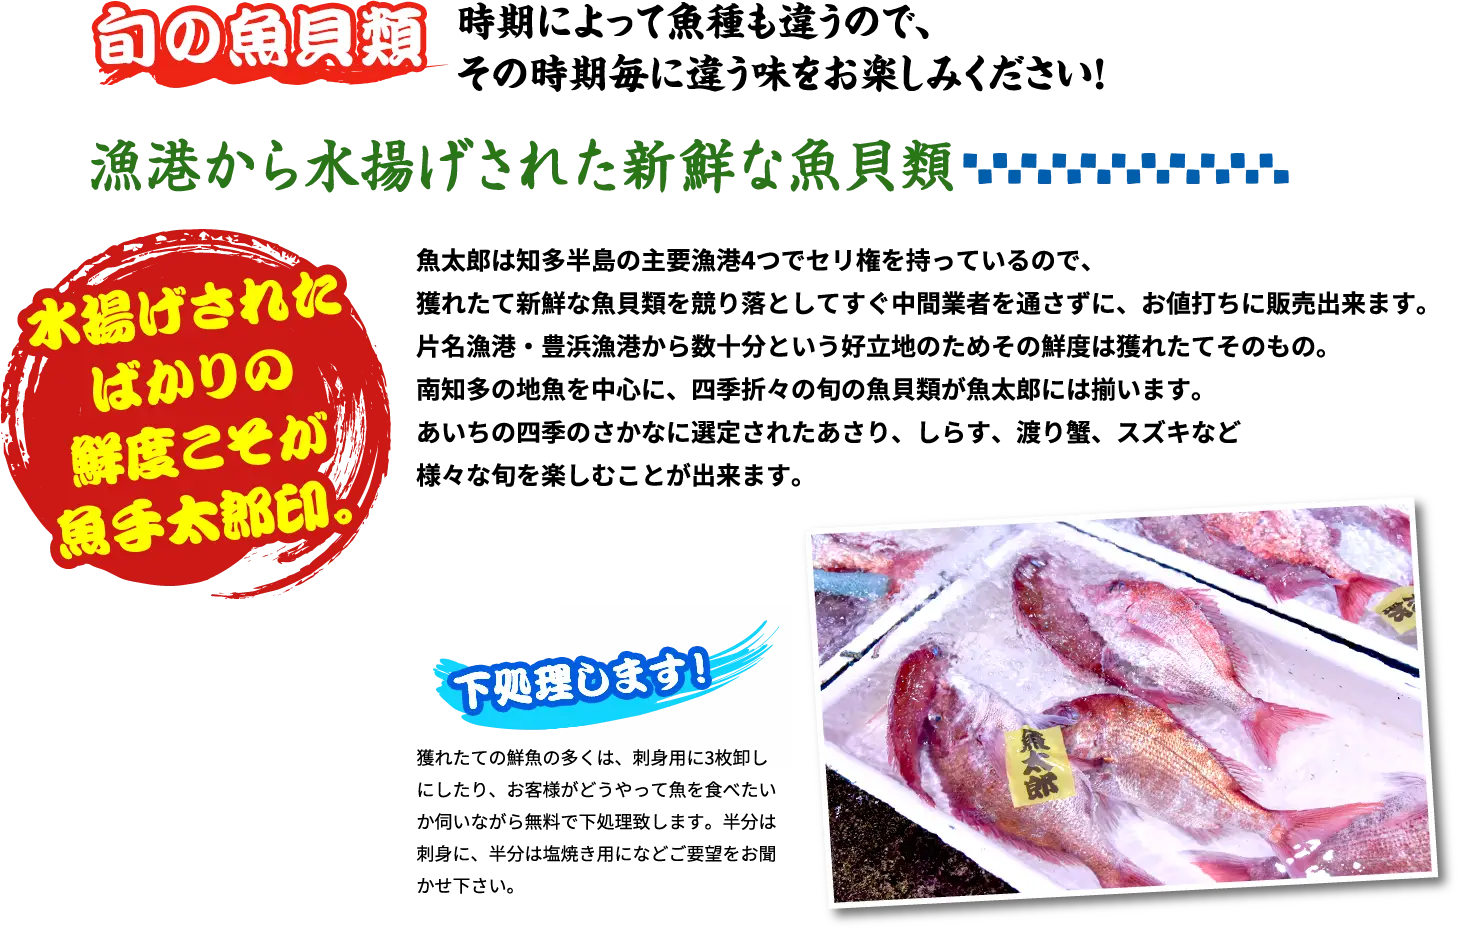 旬の魚貝類 時期によって魚種も違うので、その時期毎に違う味をお楽しみください！ 漁港から水揚げされた新鮮な魚貝類 水揚げされたばかりの鮮度こそが魚手太郎印。 魚太郎は知多半島の主要漁港4つでセリ権を持っているので、獲れたて新鮮な魚貝類を競り落としてすぐ中間業者を通さずに、お値打ちに販売出来ます。片名漁港・豊浜漁港から数十分という好立地のためその鮮度は獲れたてそのもの。南知多の地魚を中心に、四季折々の旬の魚貝類が魚太郎には揃います。あいちの四季のさかなに選定されたあさり、しらす、渡り蟹、スズキなど様々な旬を楽しむことが出来ます。 下処理します！ 獲れたての鮮魚の多くは、刺身用に3枚卸しにしたり、お客様がどうやって魚を食べたいか伺いながら無料で下処理致します。半分は刺身に、半分は塩焼き用になどご要望をお聞かせ下さい。